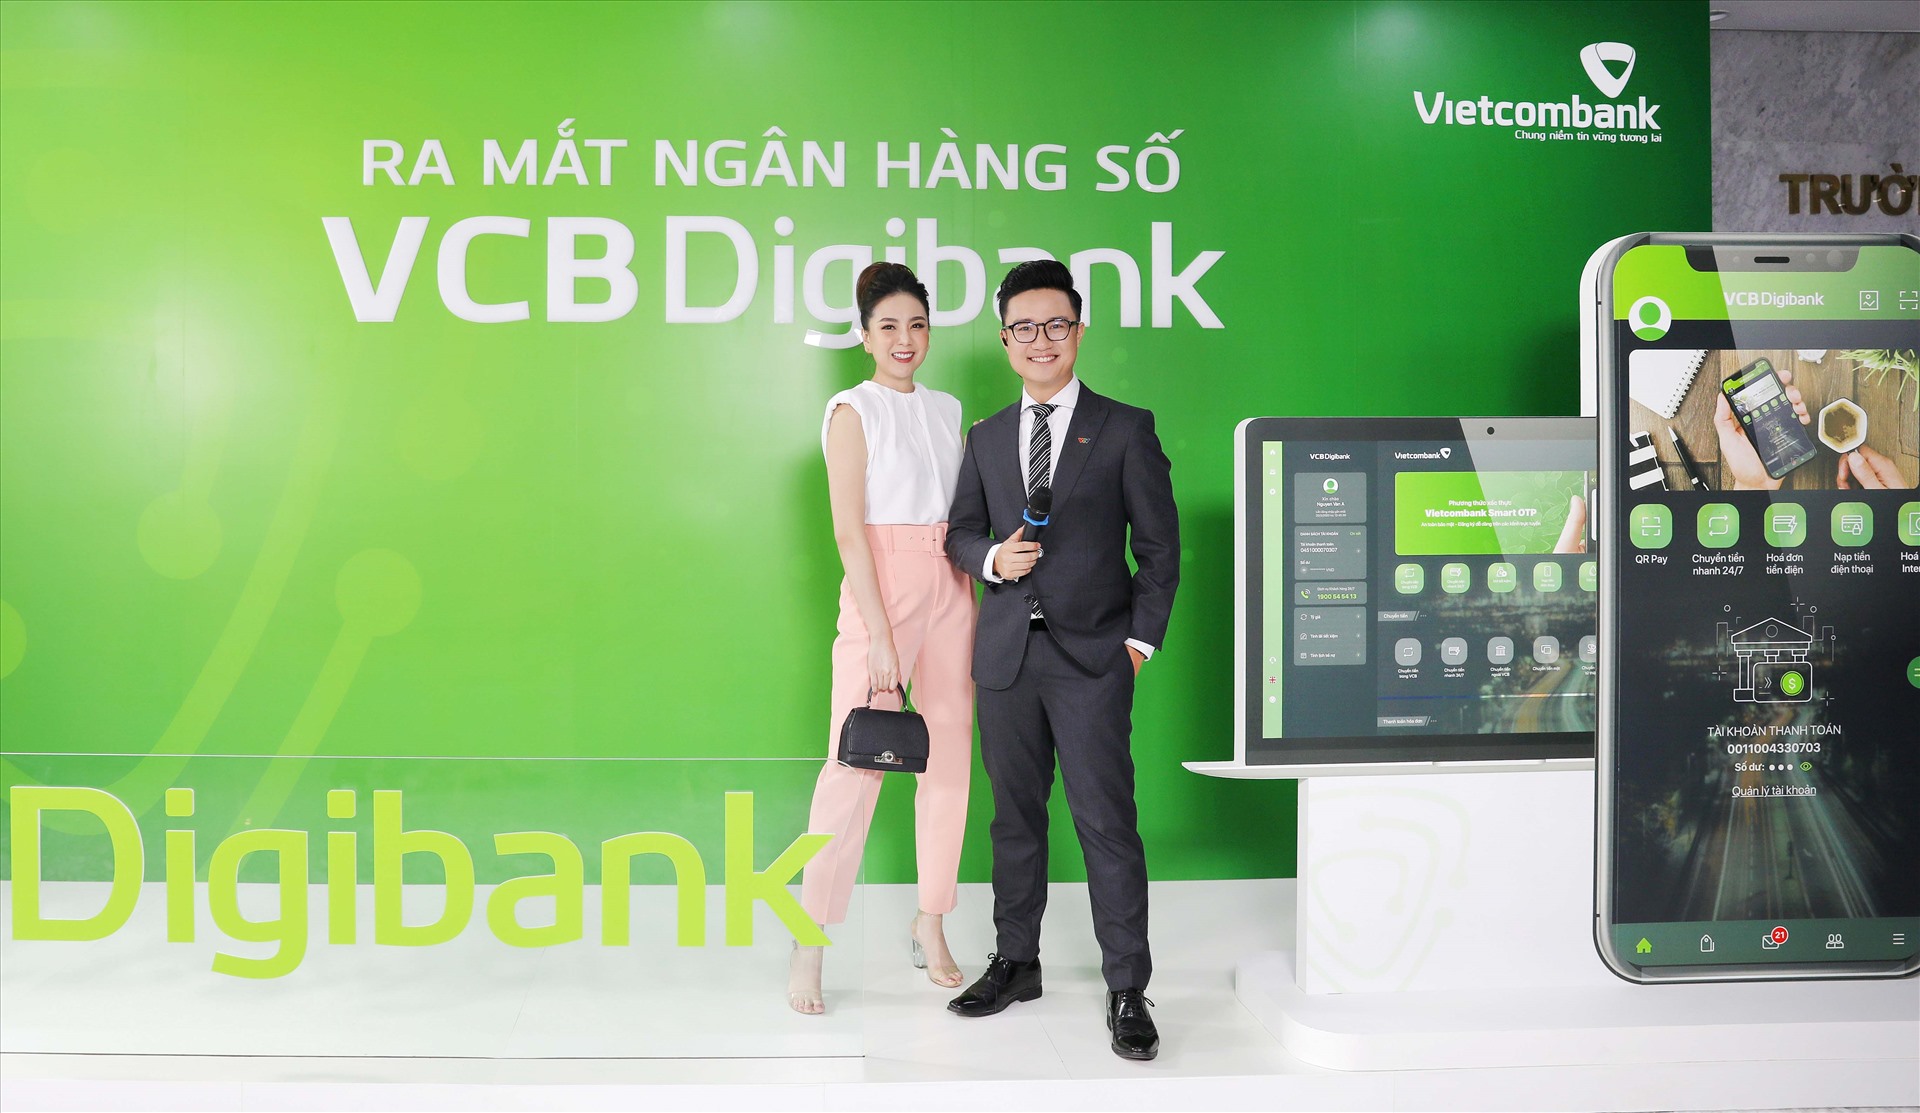 Dịch vụ ngân hàng số hoàn toàn mới VCB Digibank của ngân hàng Vietcombank. Ảnh: VCB